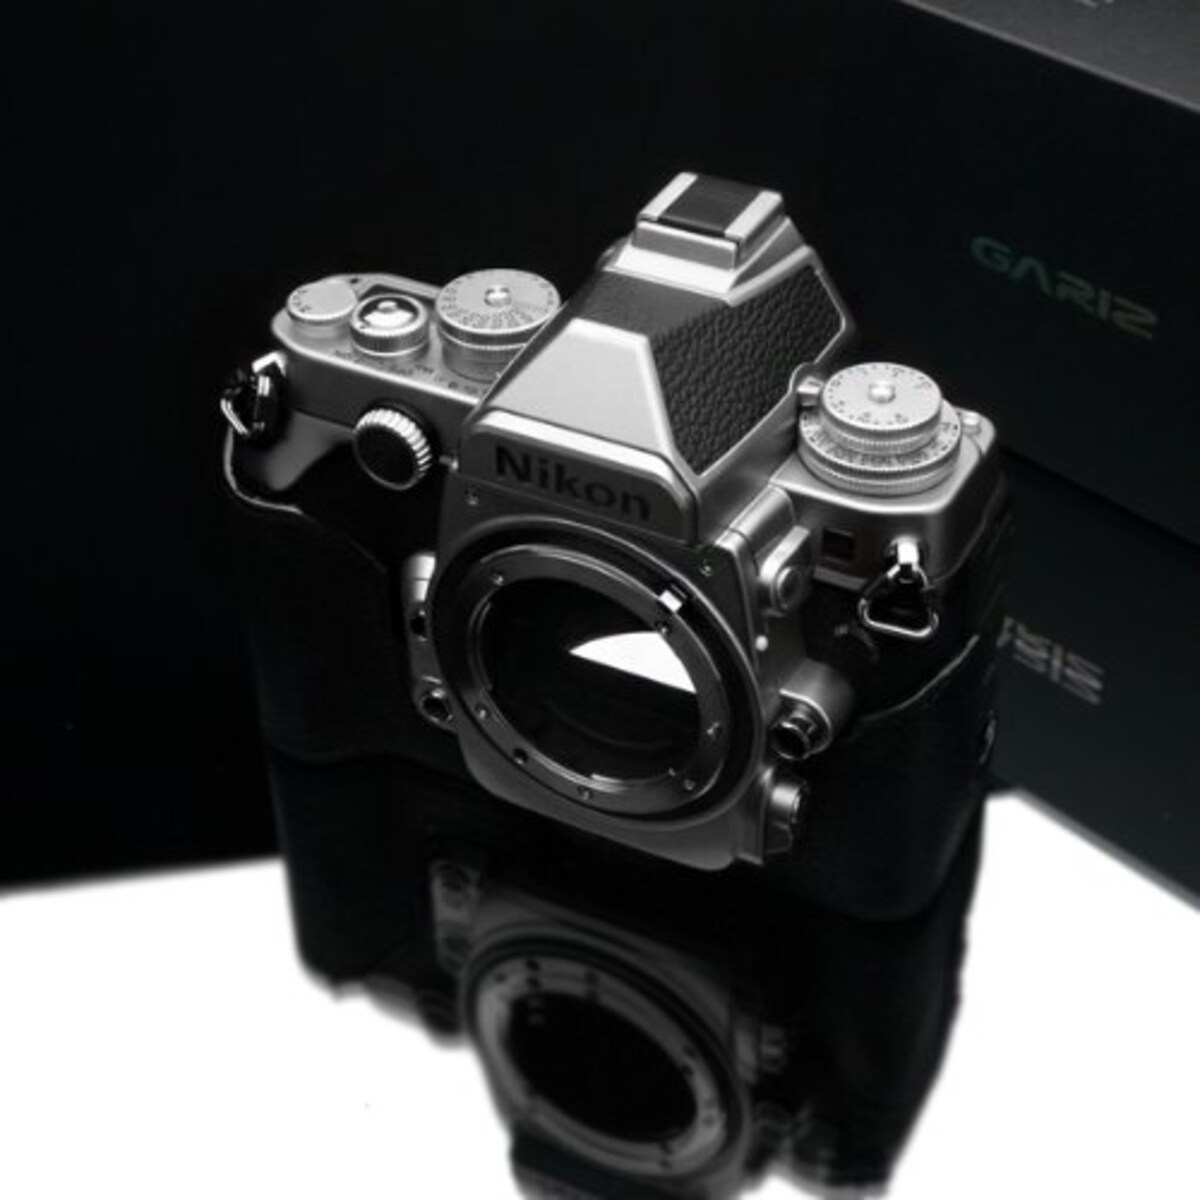  GARIZ Nikon Df用 本革カメラケース Gun Shot Ring付 XS-CHDFBK ブラック画像4 